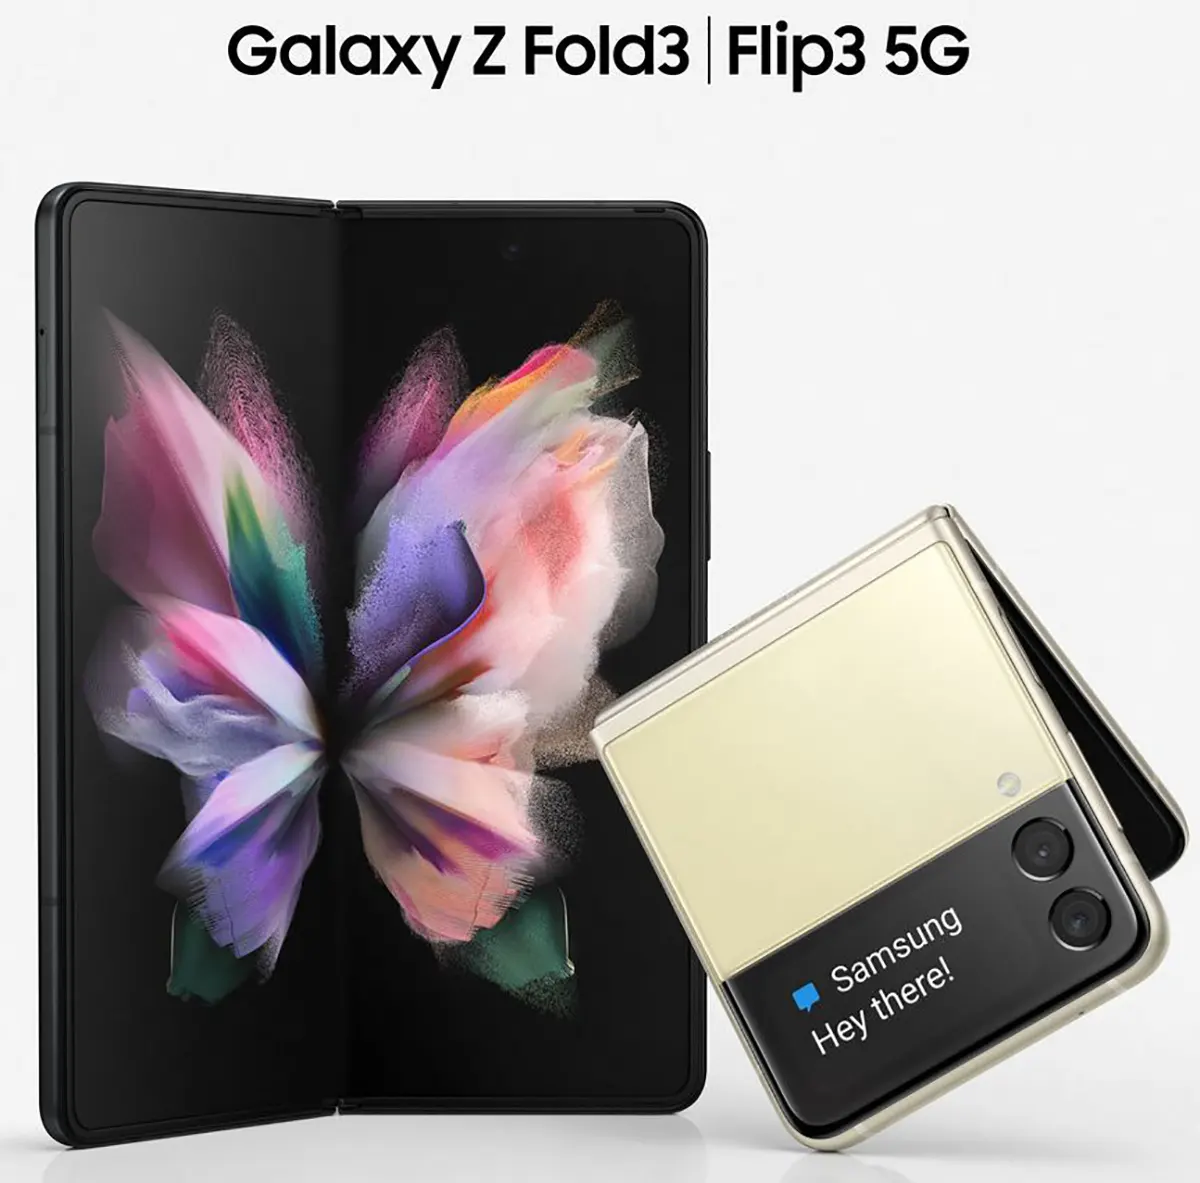 Galaxy Z Fold 3 lộ
ảnh render hoàn chỉnh, xác nhận sẽ hỗ trợ bút S-Pen